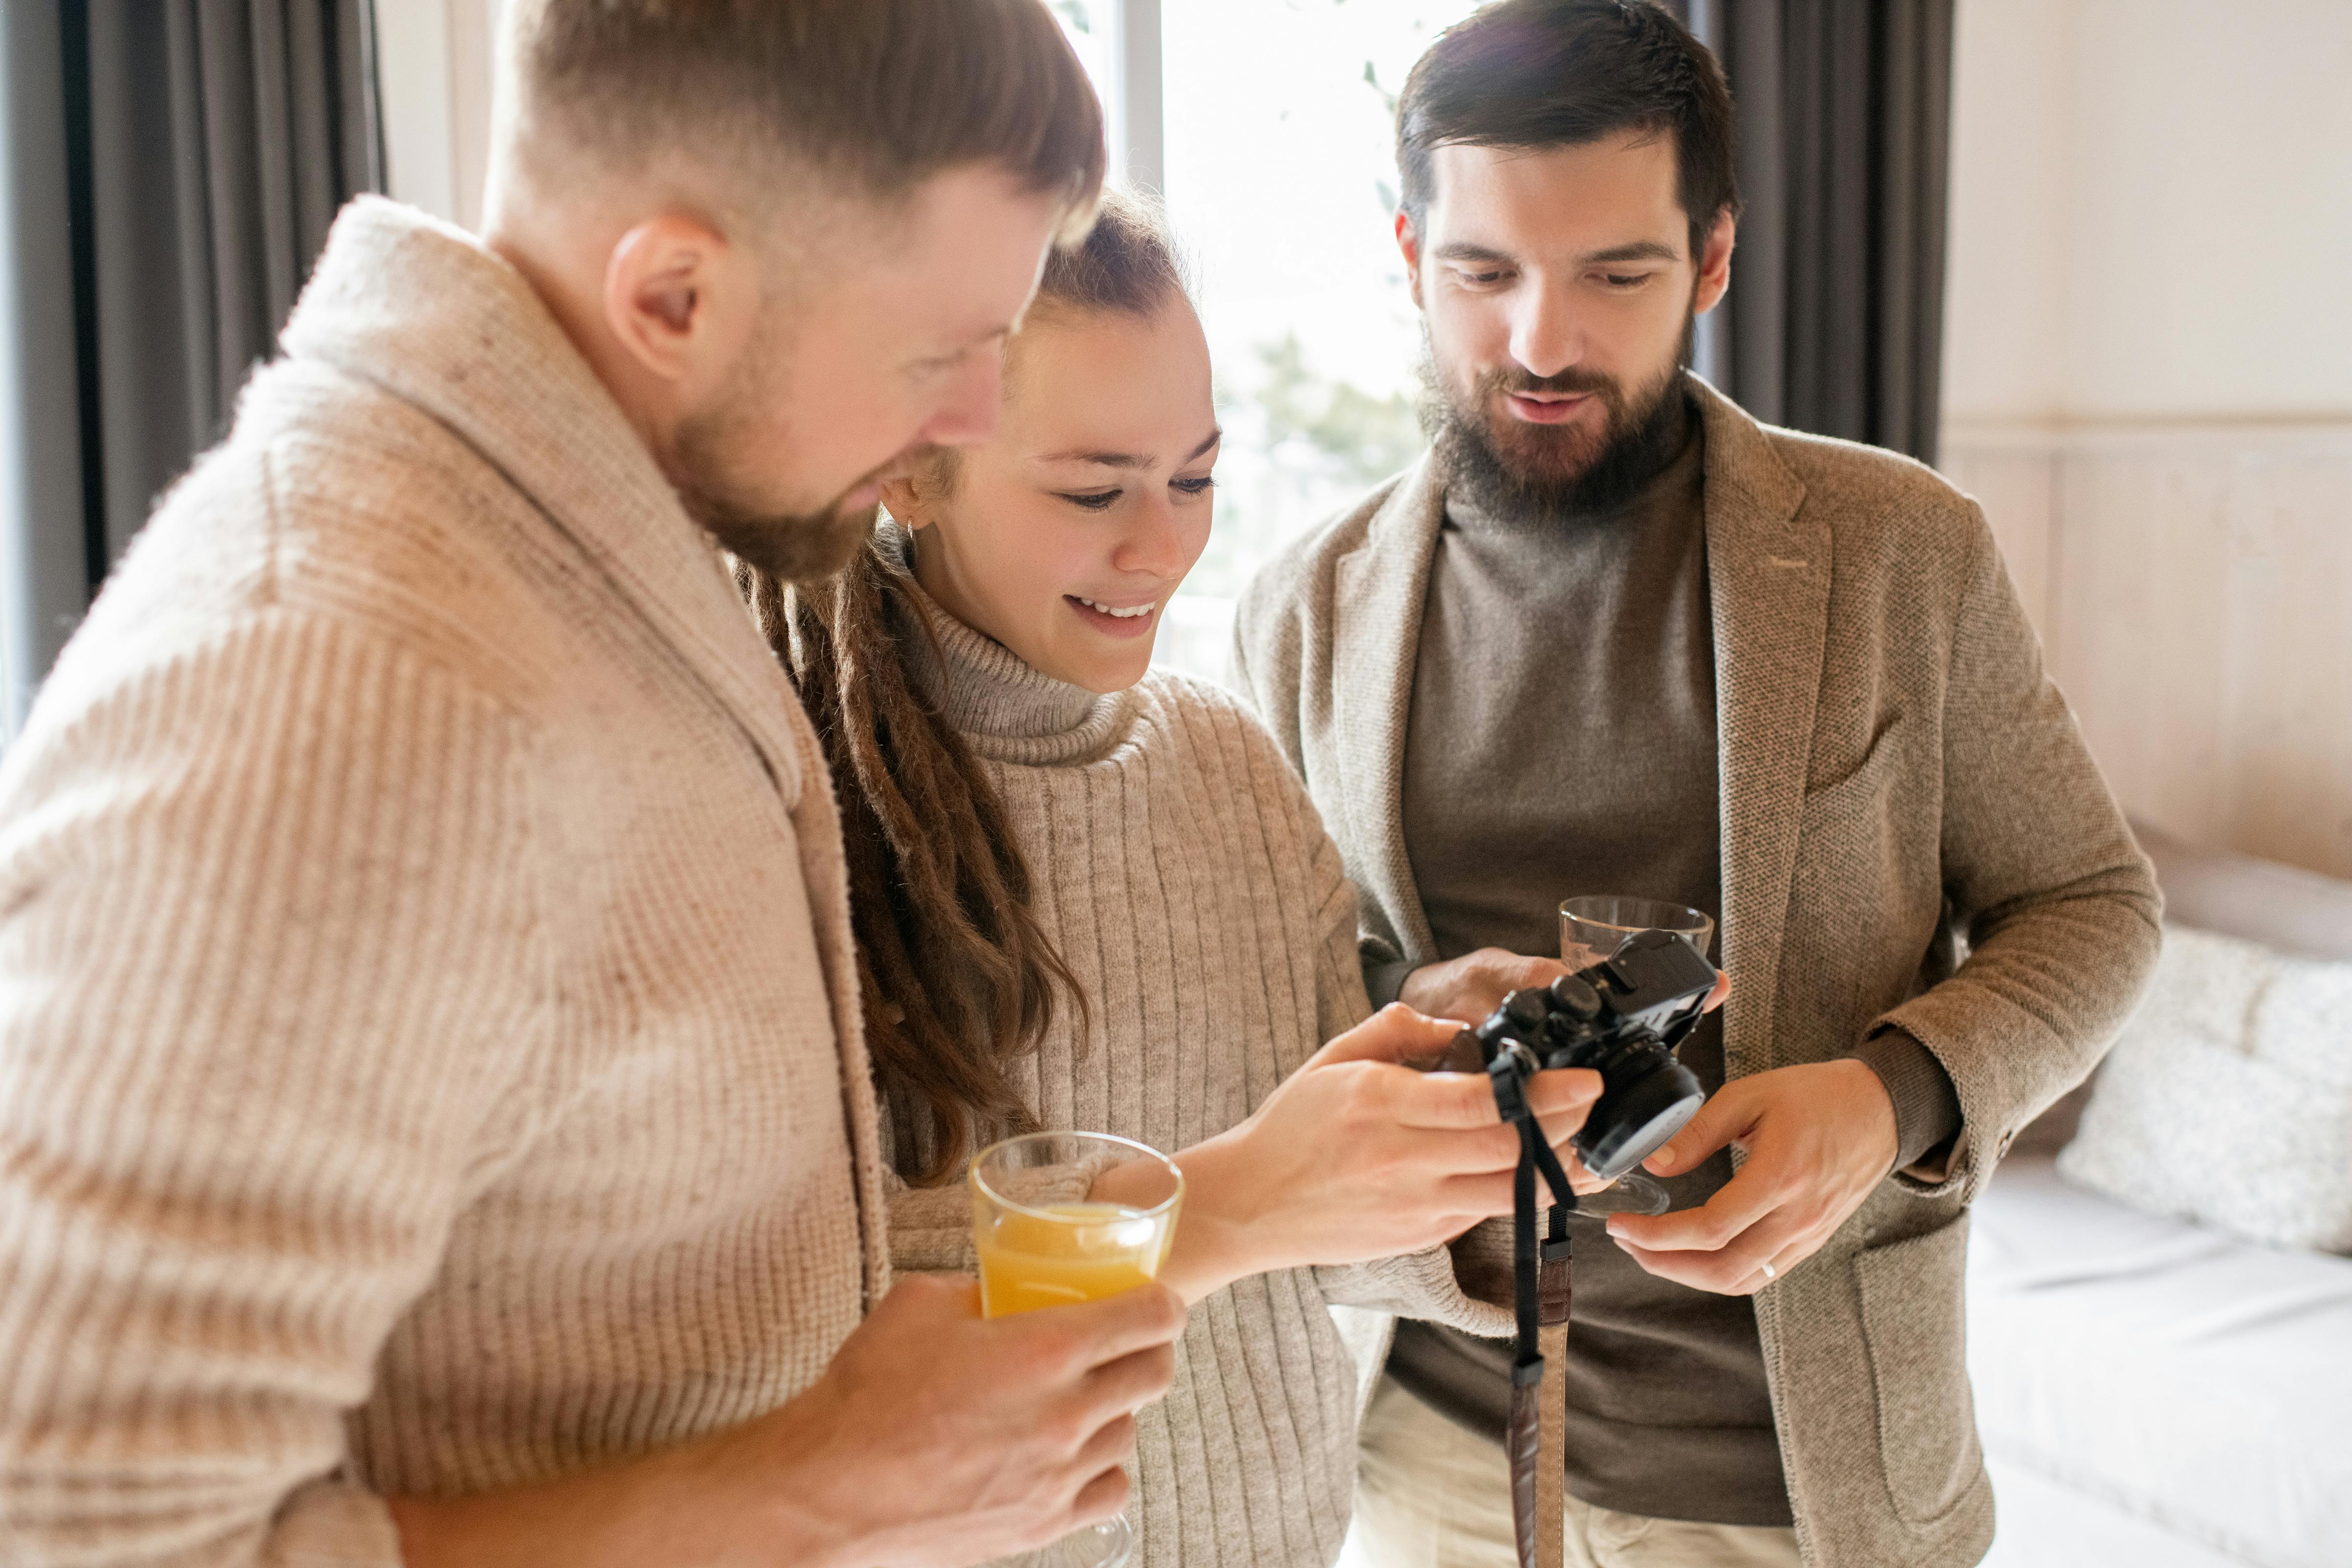 Une photo de trois personnes regardant un appareil photo | Source : Pexels